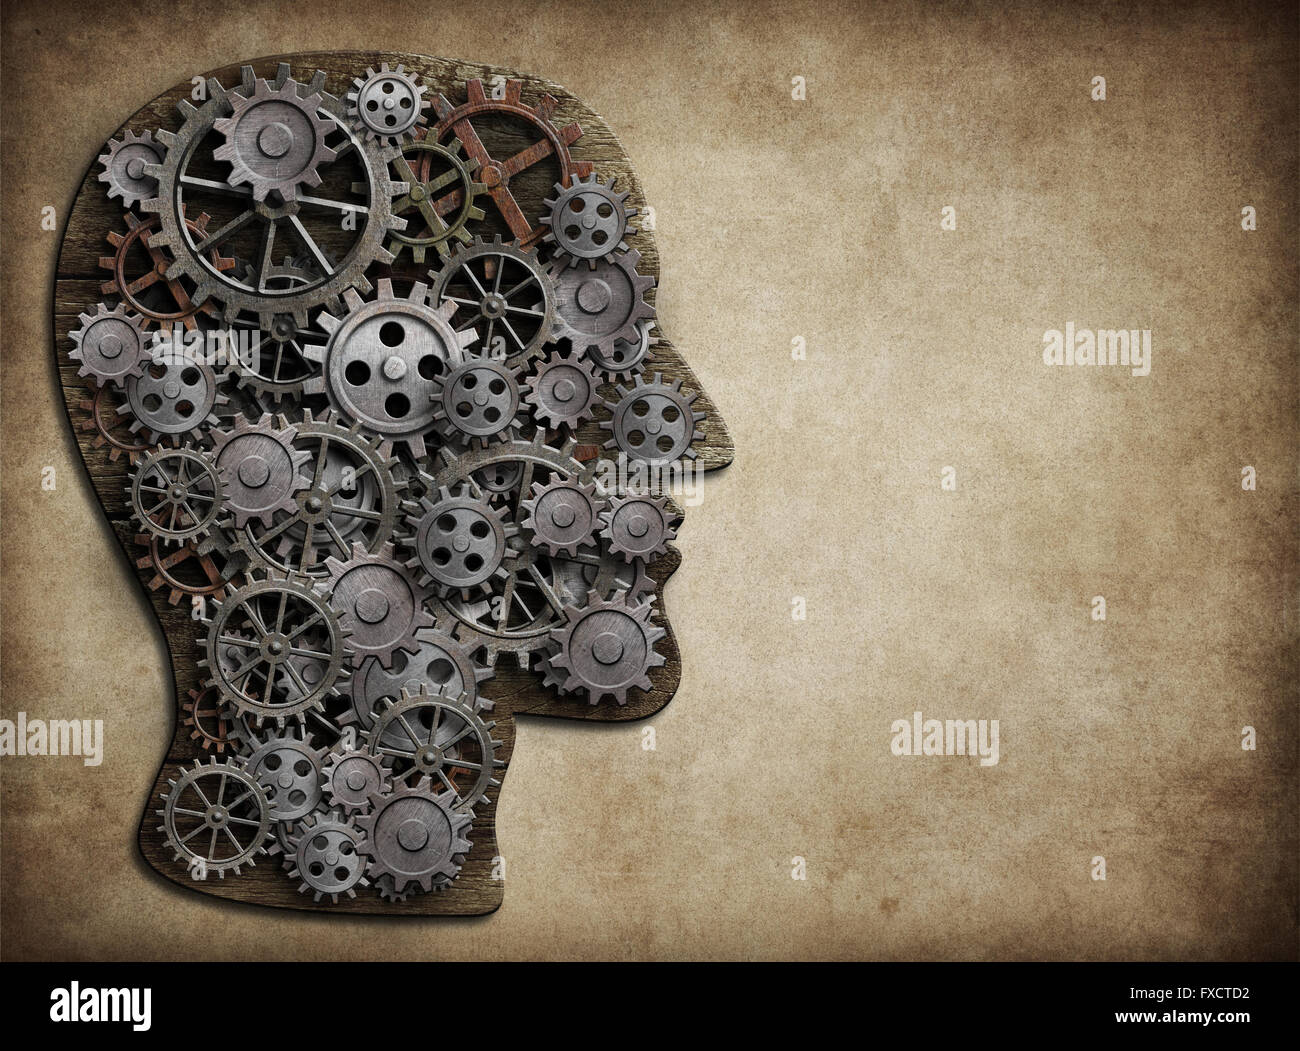 Kopf aus Getriebe und Zahnräder hergestellt. Aktivität des Gehirns, Idee Konzept. Stockfoto